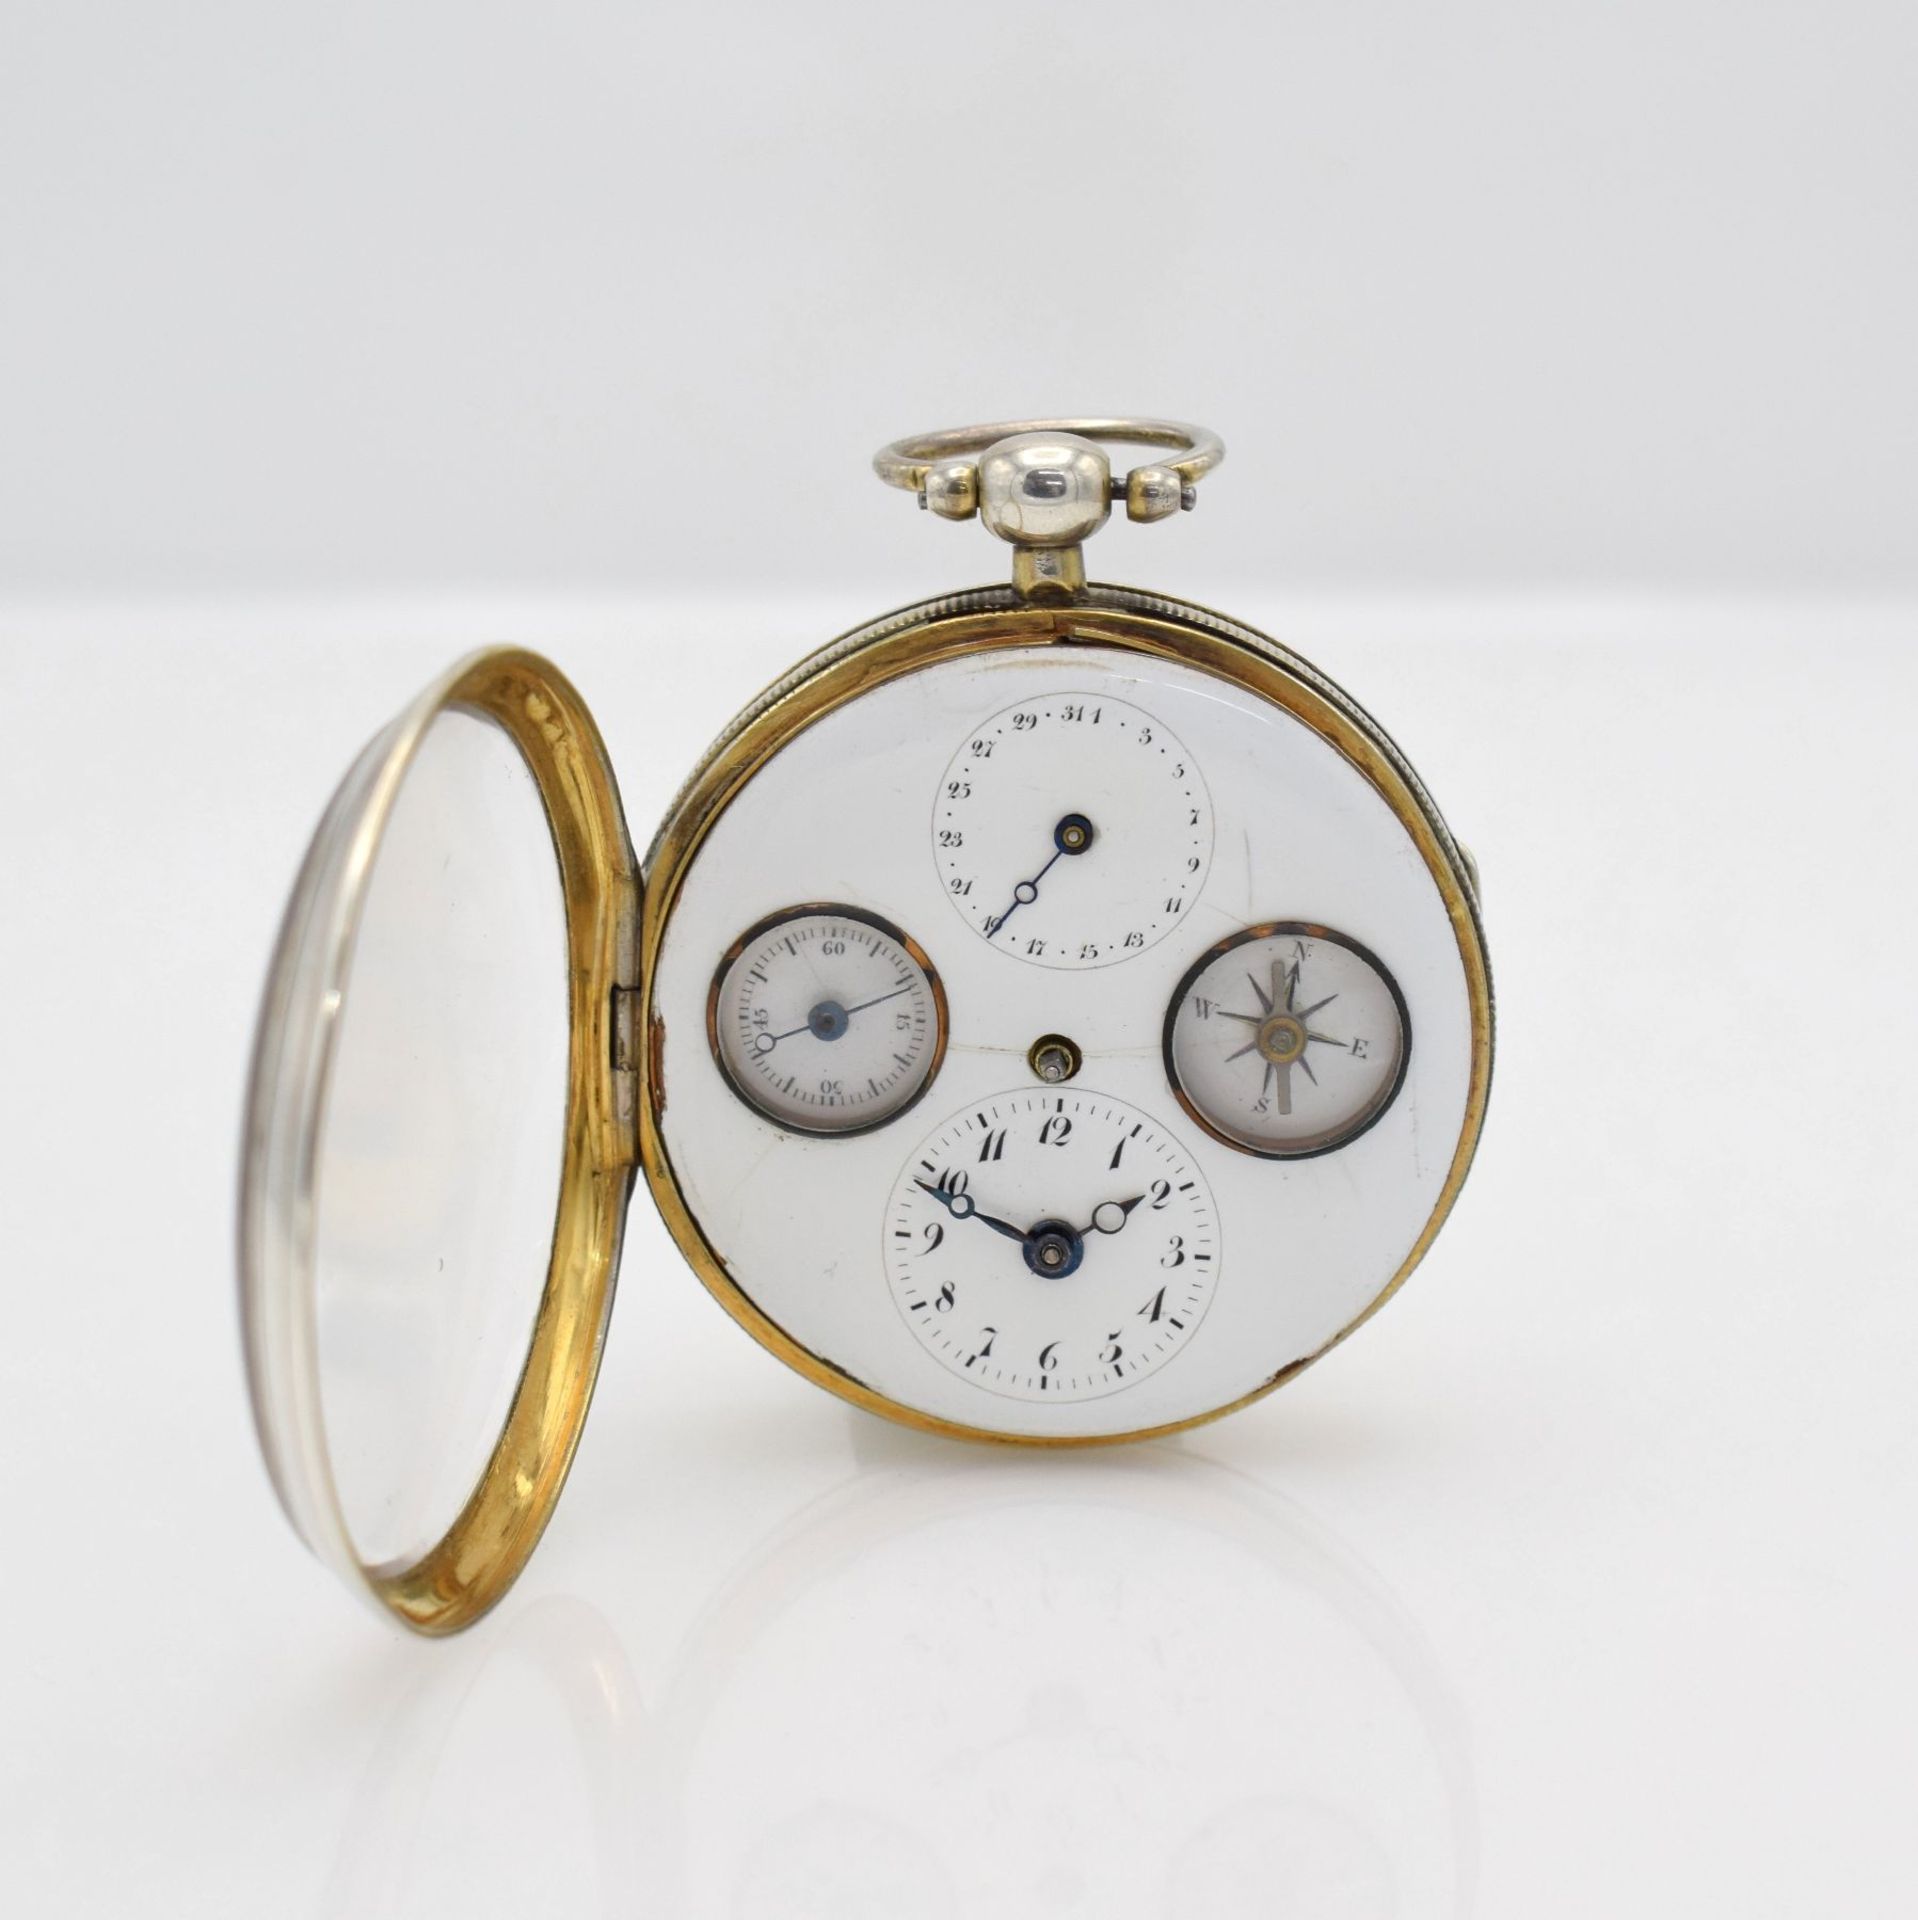 Seltene Spindeltaschenuhr mit Kompass, Datum & kleiner Sekunde, Frankreich um 1800, beids.vergl. - Bild 2 aus 5